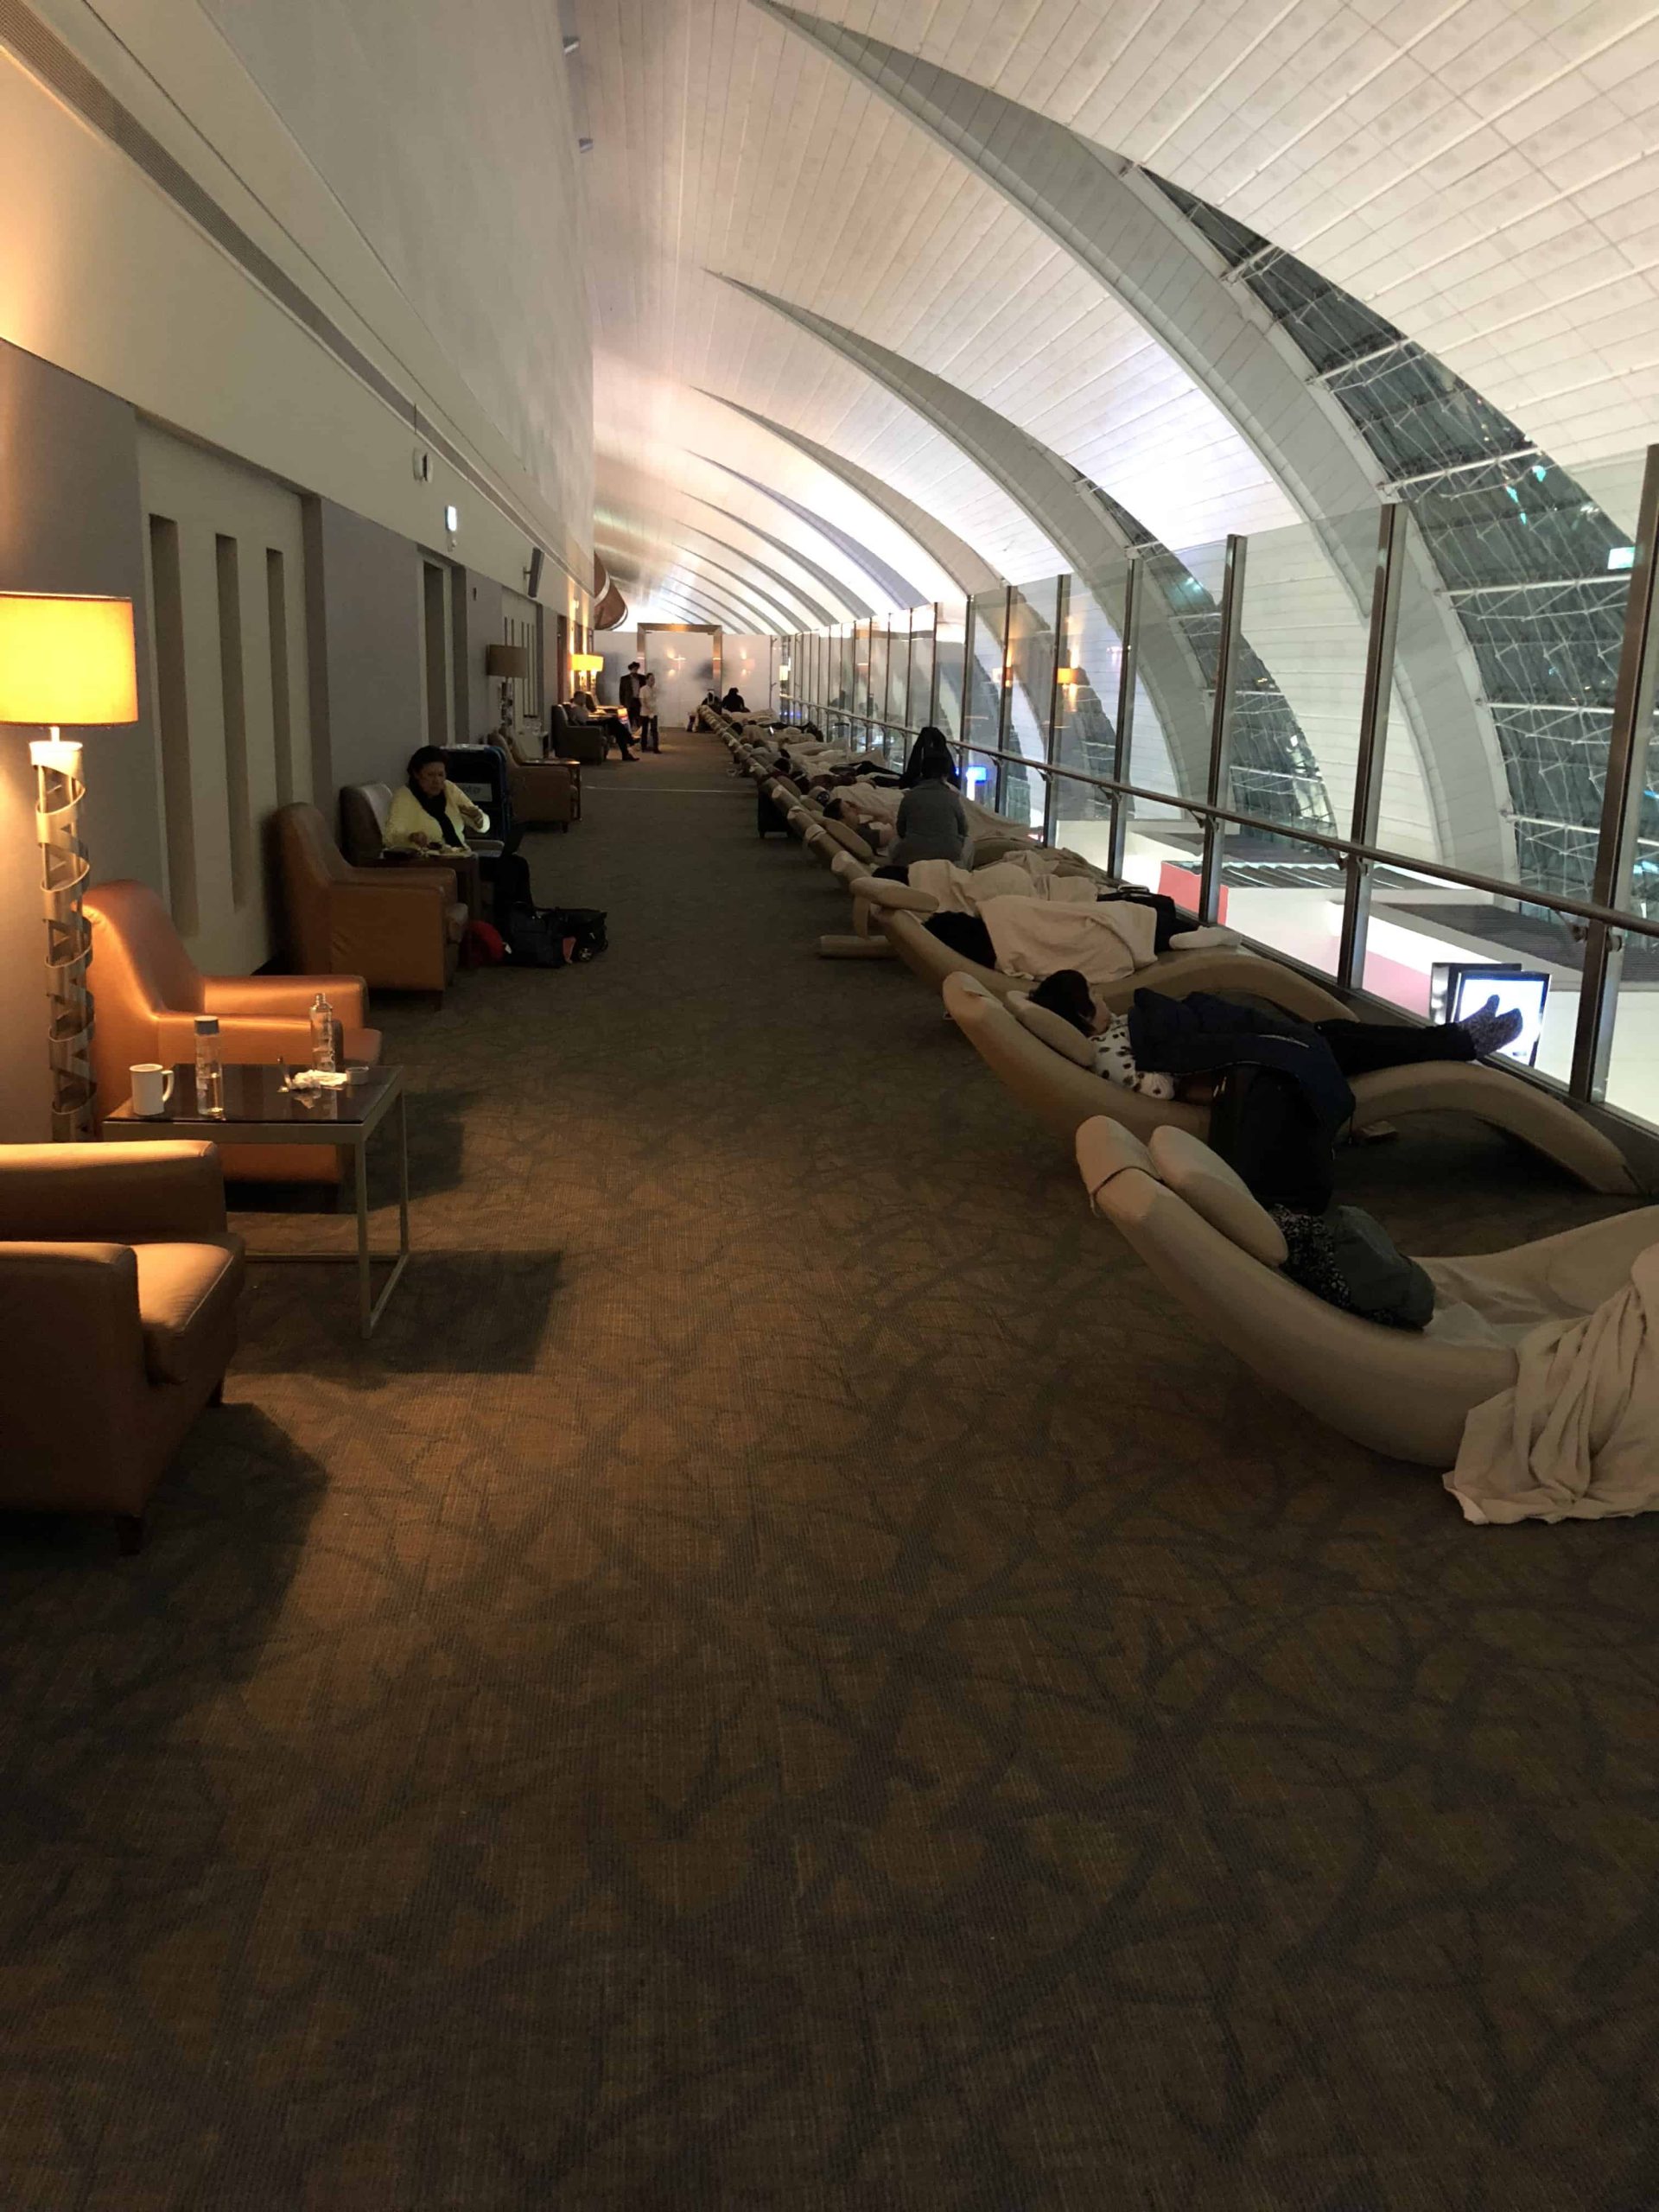 Qatar Airways Lounge